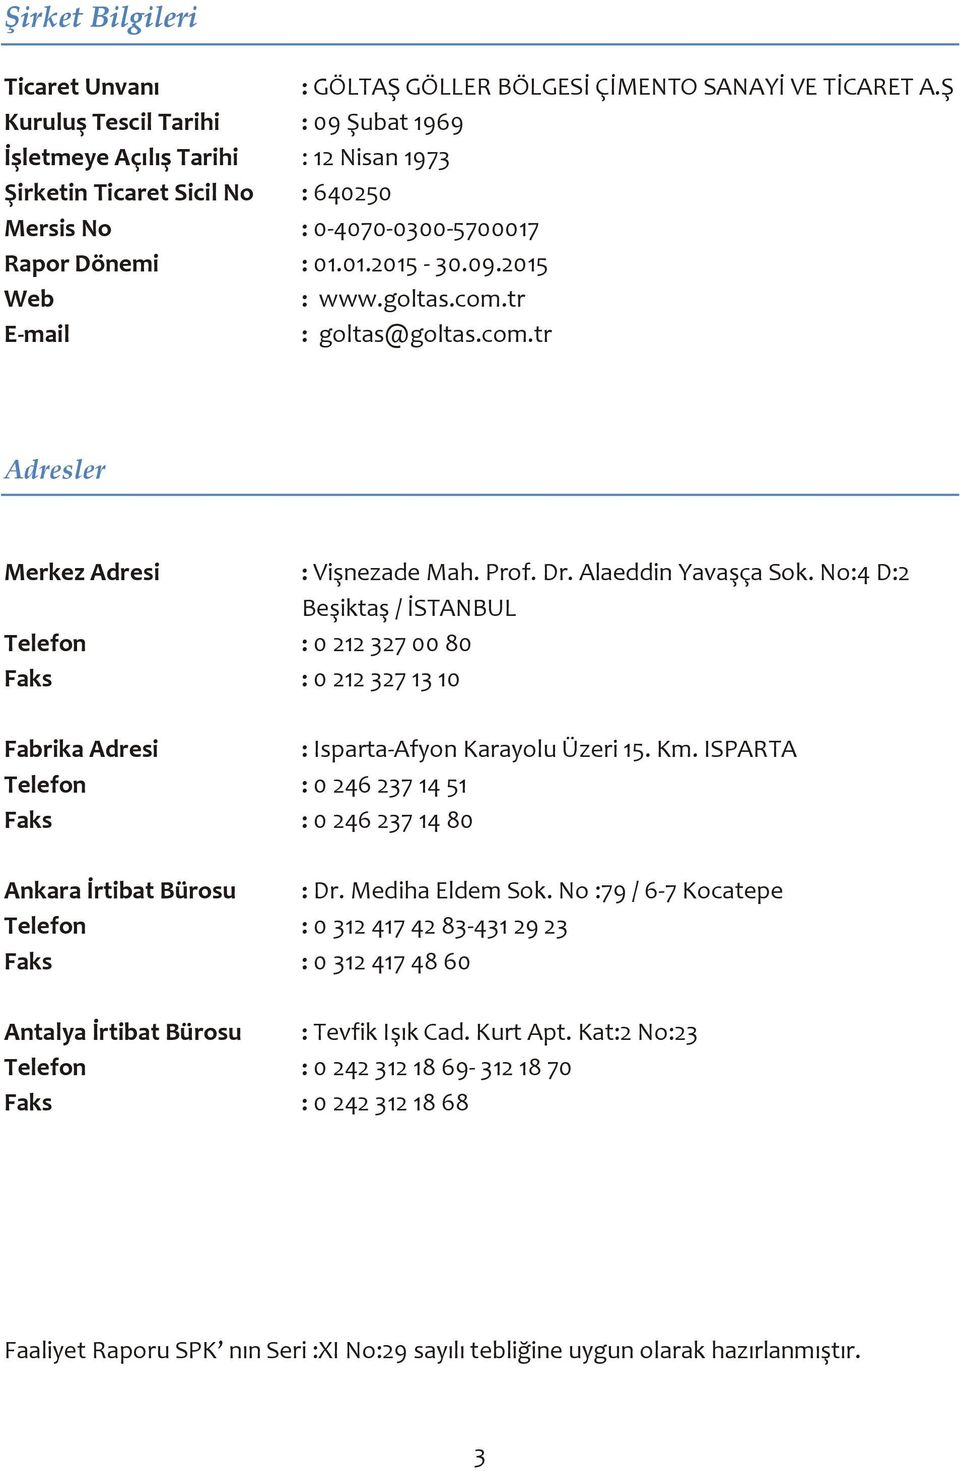 goltas.com.tr E-mail : goltas@goltas.com.tr Adresler Merkez Adresi : Vişnezade Mah. Prof. Dr. Alaeddin Yavaşça Sok.